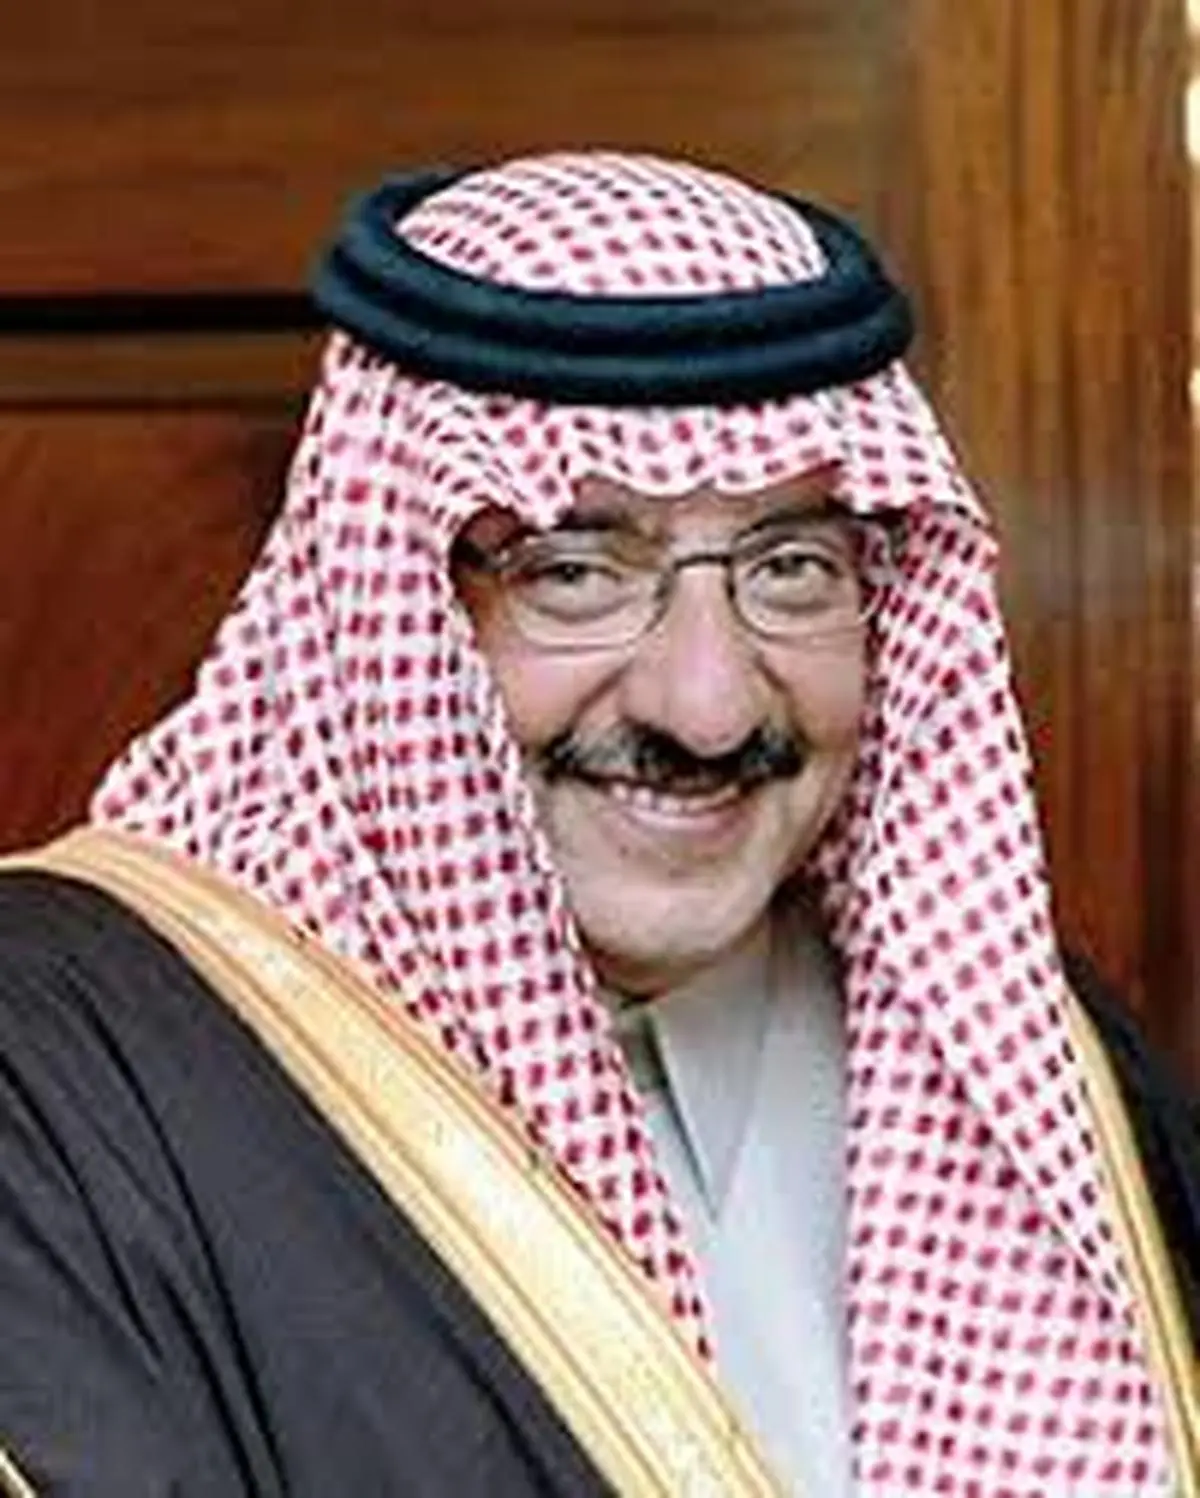 
محمد بن نایف | راز بی خبری از شاهزاده سعودی 